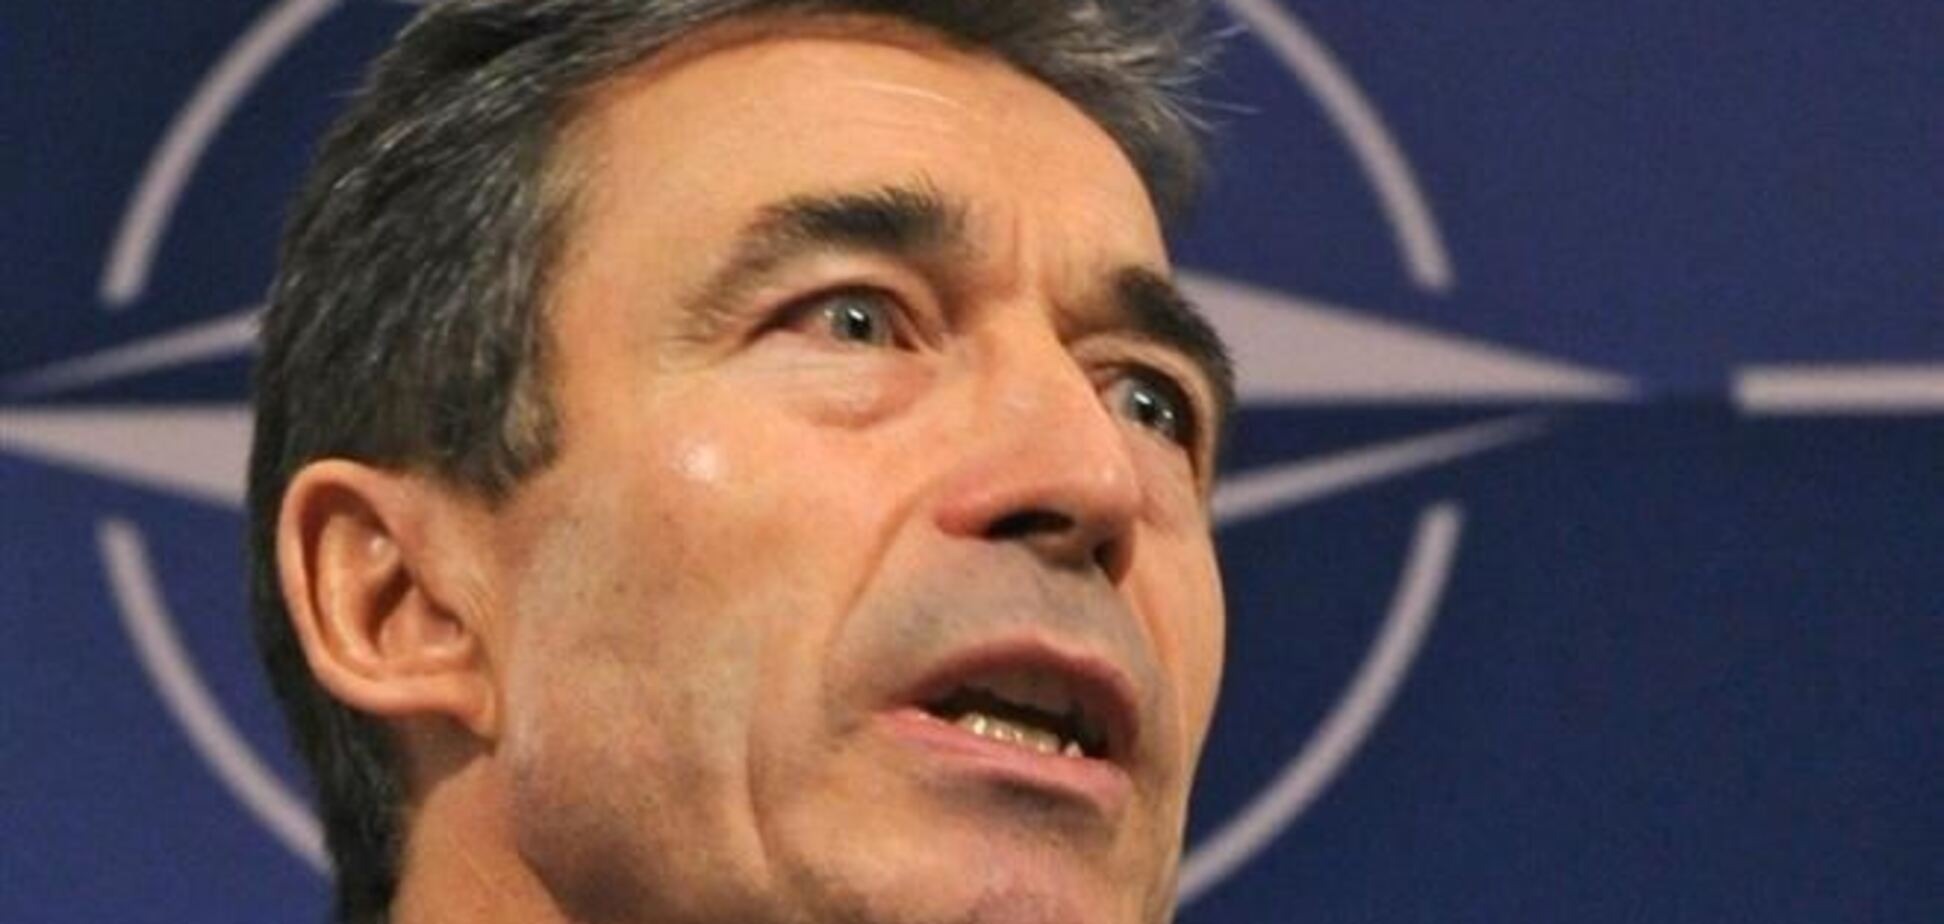 НАТО пока не планирует военных действий в Украине - глава альянса